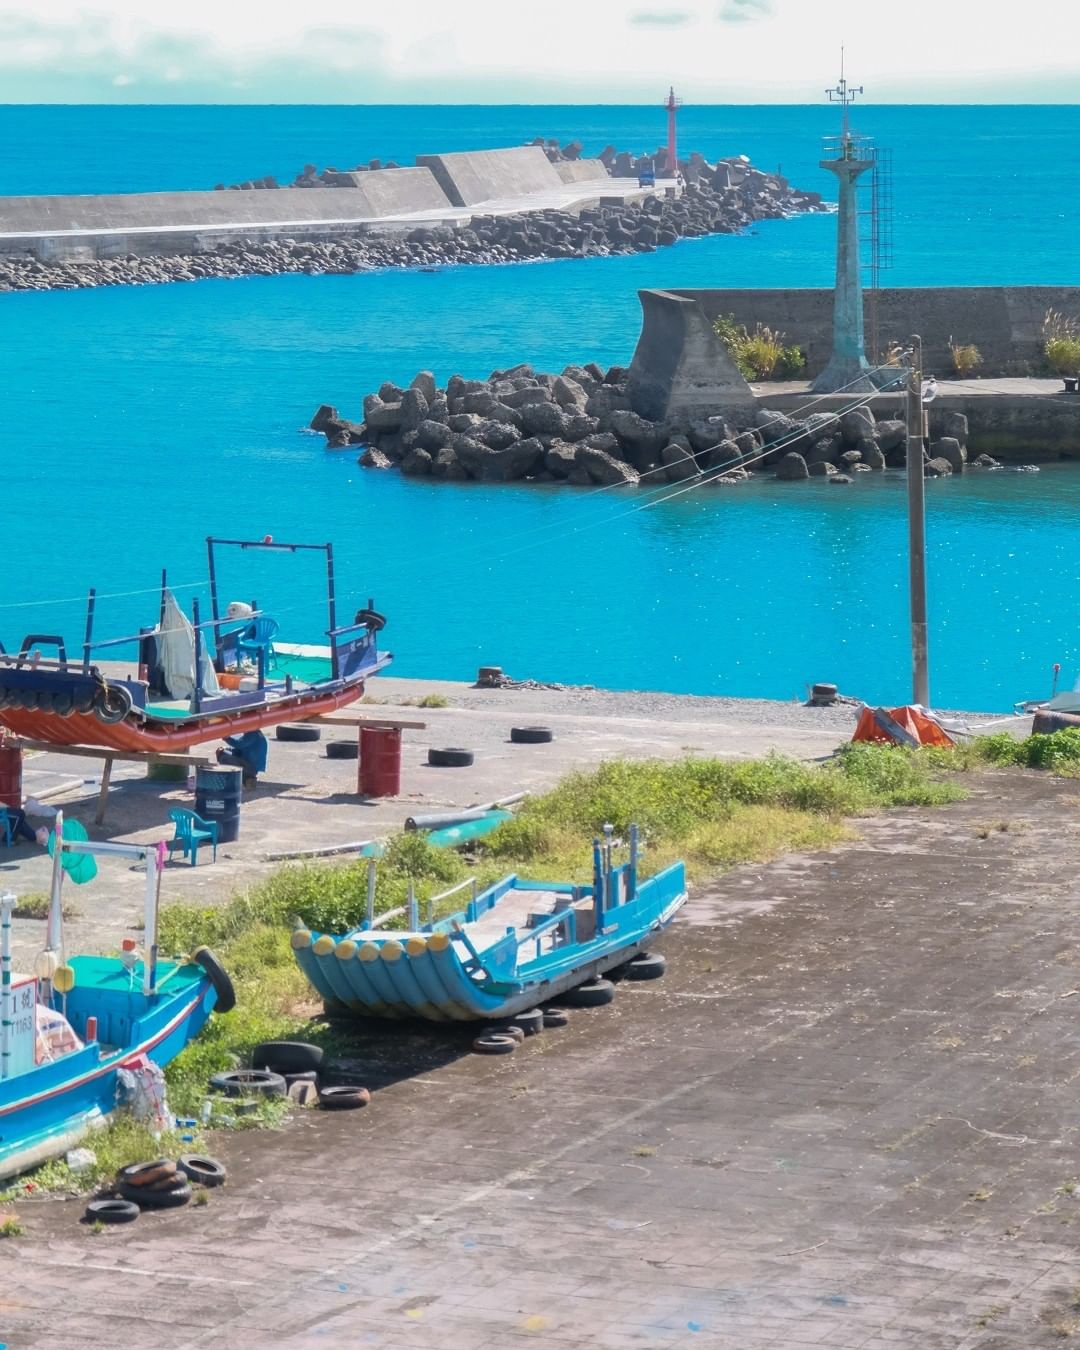 意外發現的小漁港在倒數幾天的工作日感到特別驚喜-歡迎在您的照片標記我們 @ecnsa讓更多人看見台灣最美東海岸-#taiwan #...